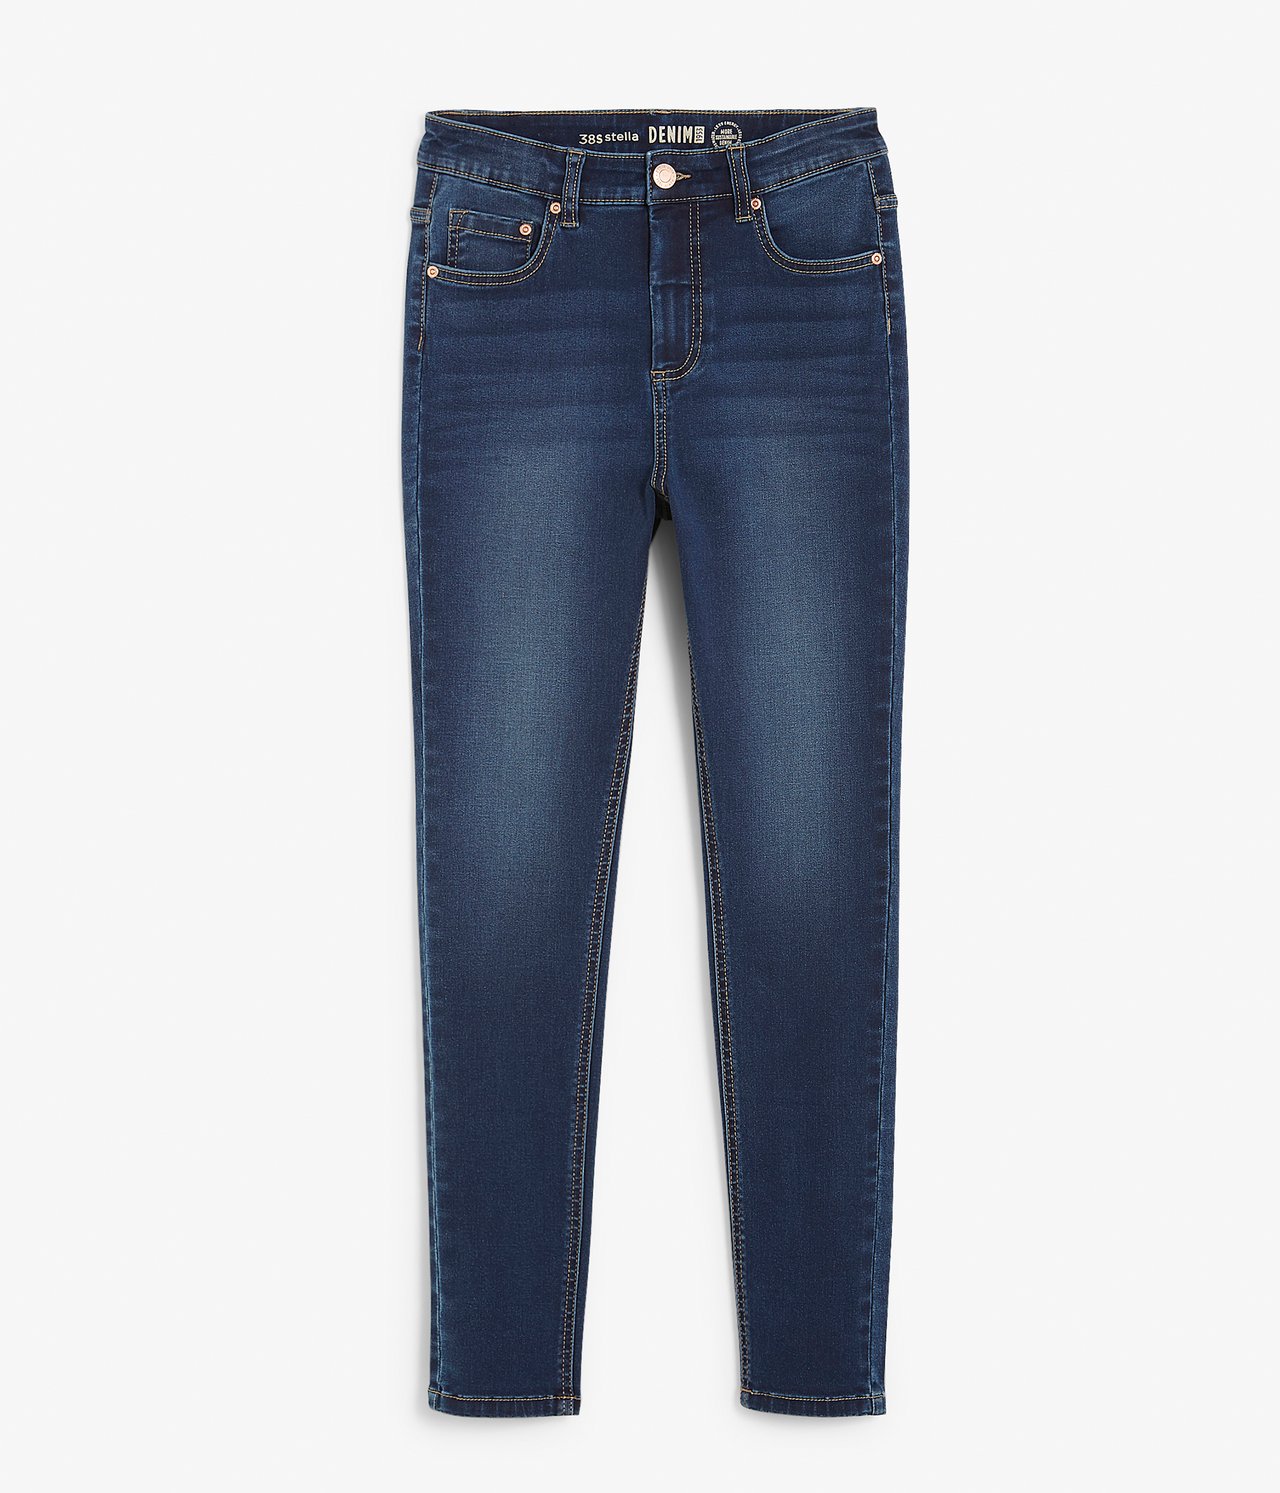 Super slim jeans short leg Tumma denimi - null - 4